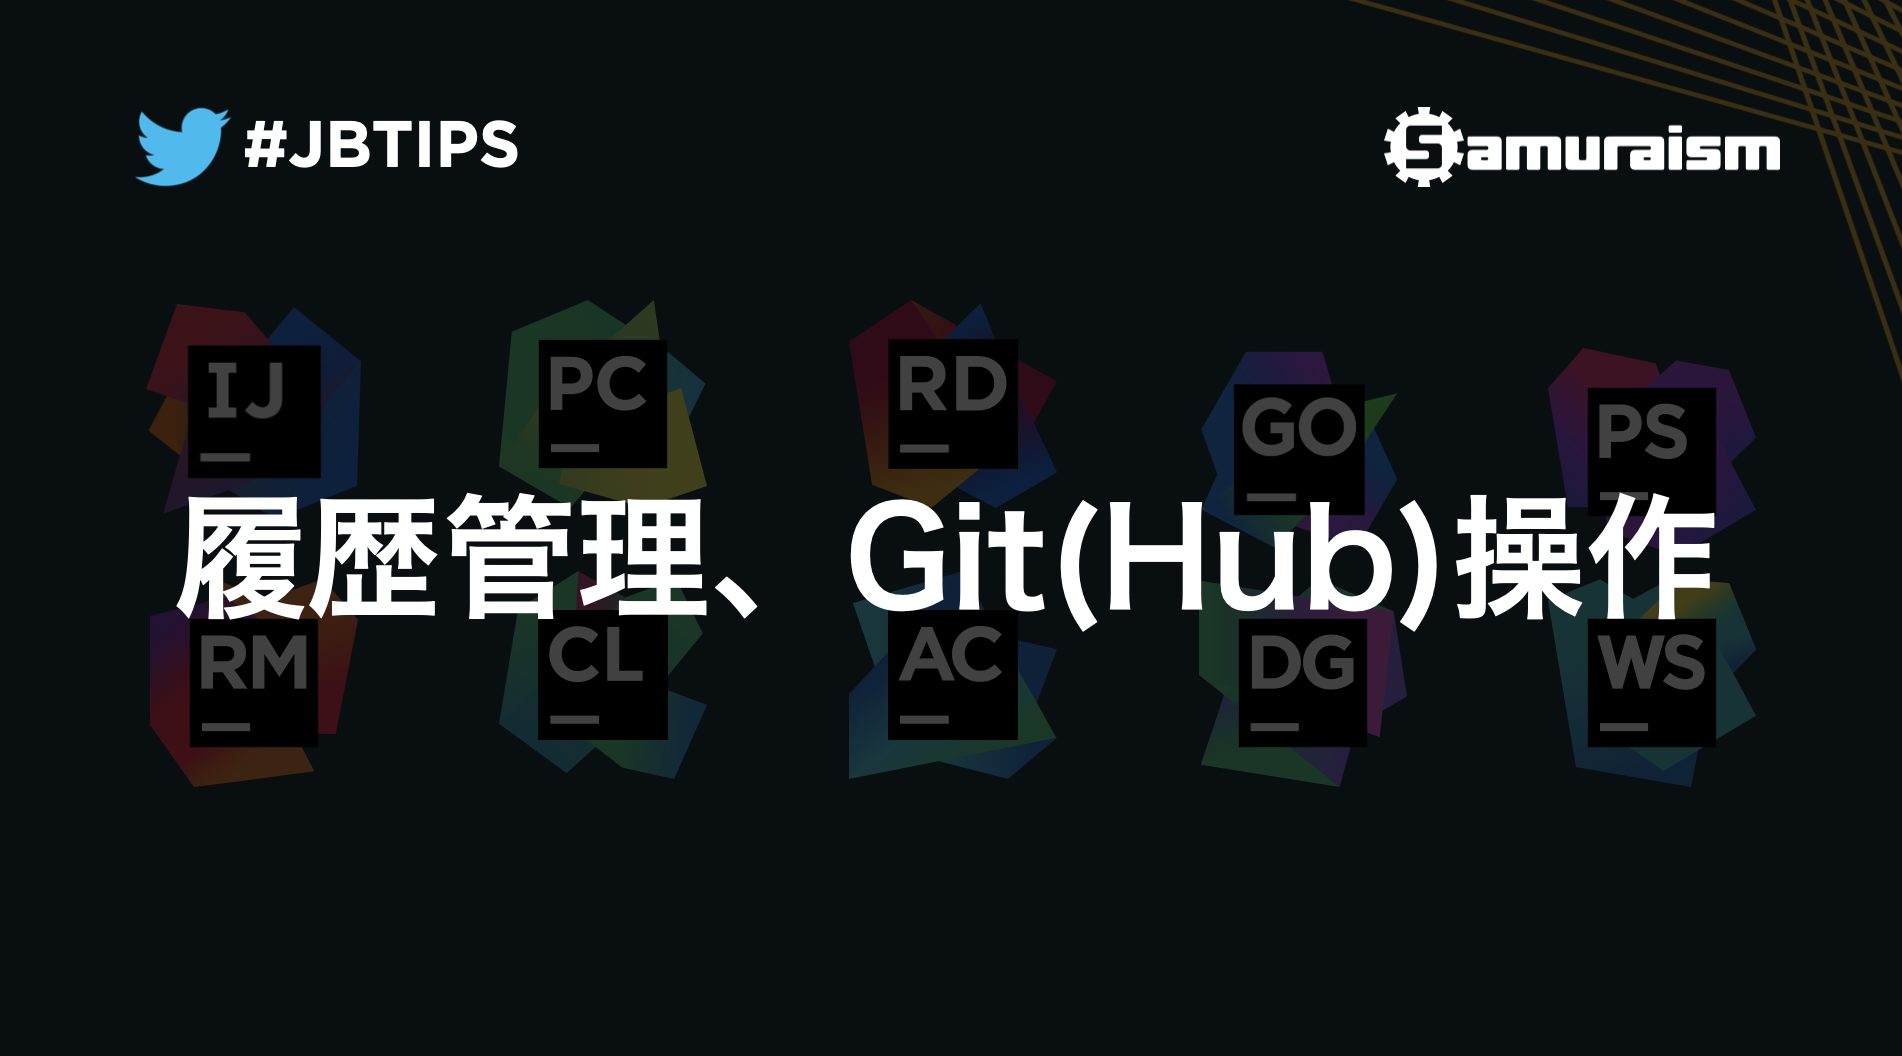 オンラインセミナー「履歴管理、Git(Hub)操作」 動画公開 #jbtips